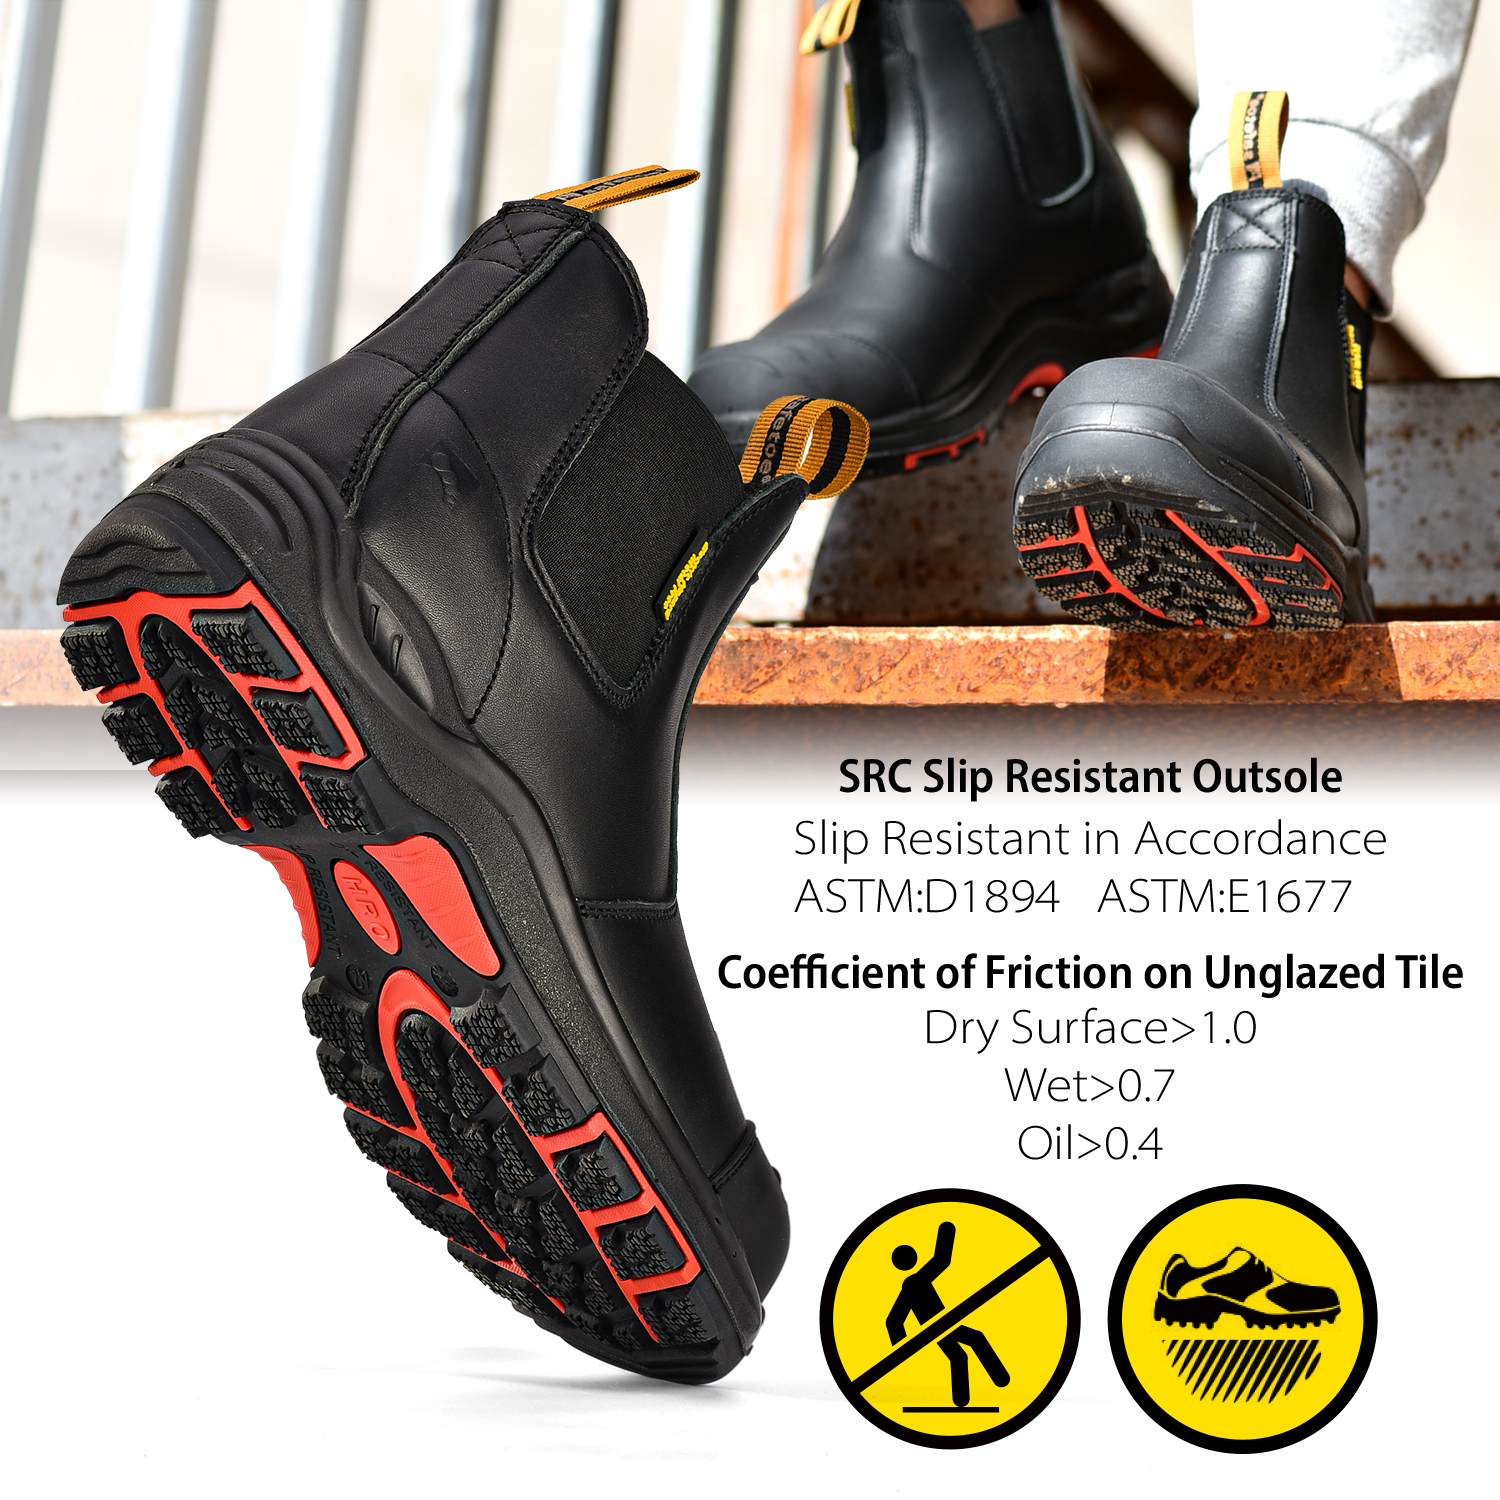 Pronto Stock Stivali di sicurezza in pelle nera per uomo e donna M-8025NBK